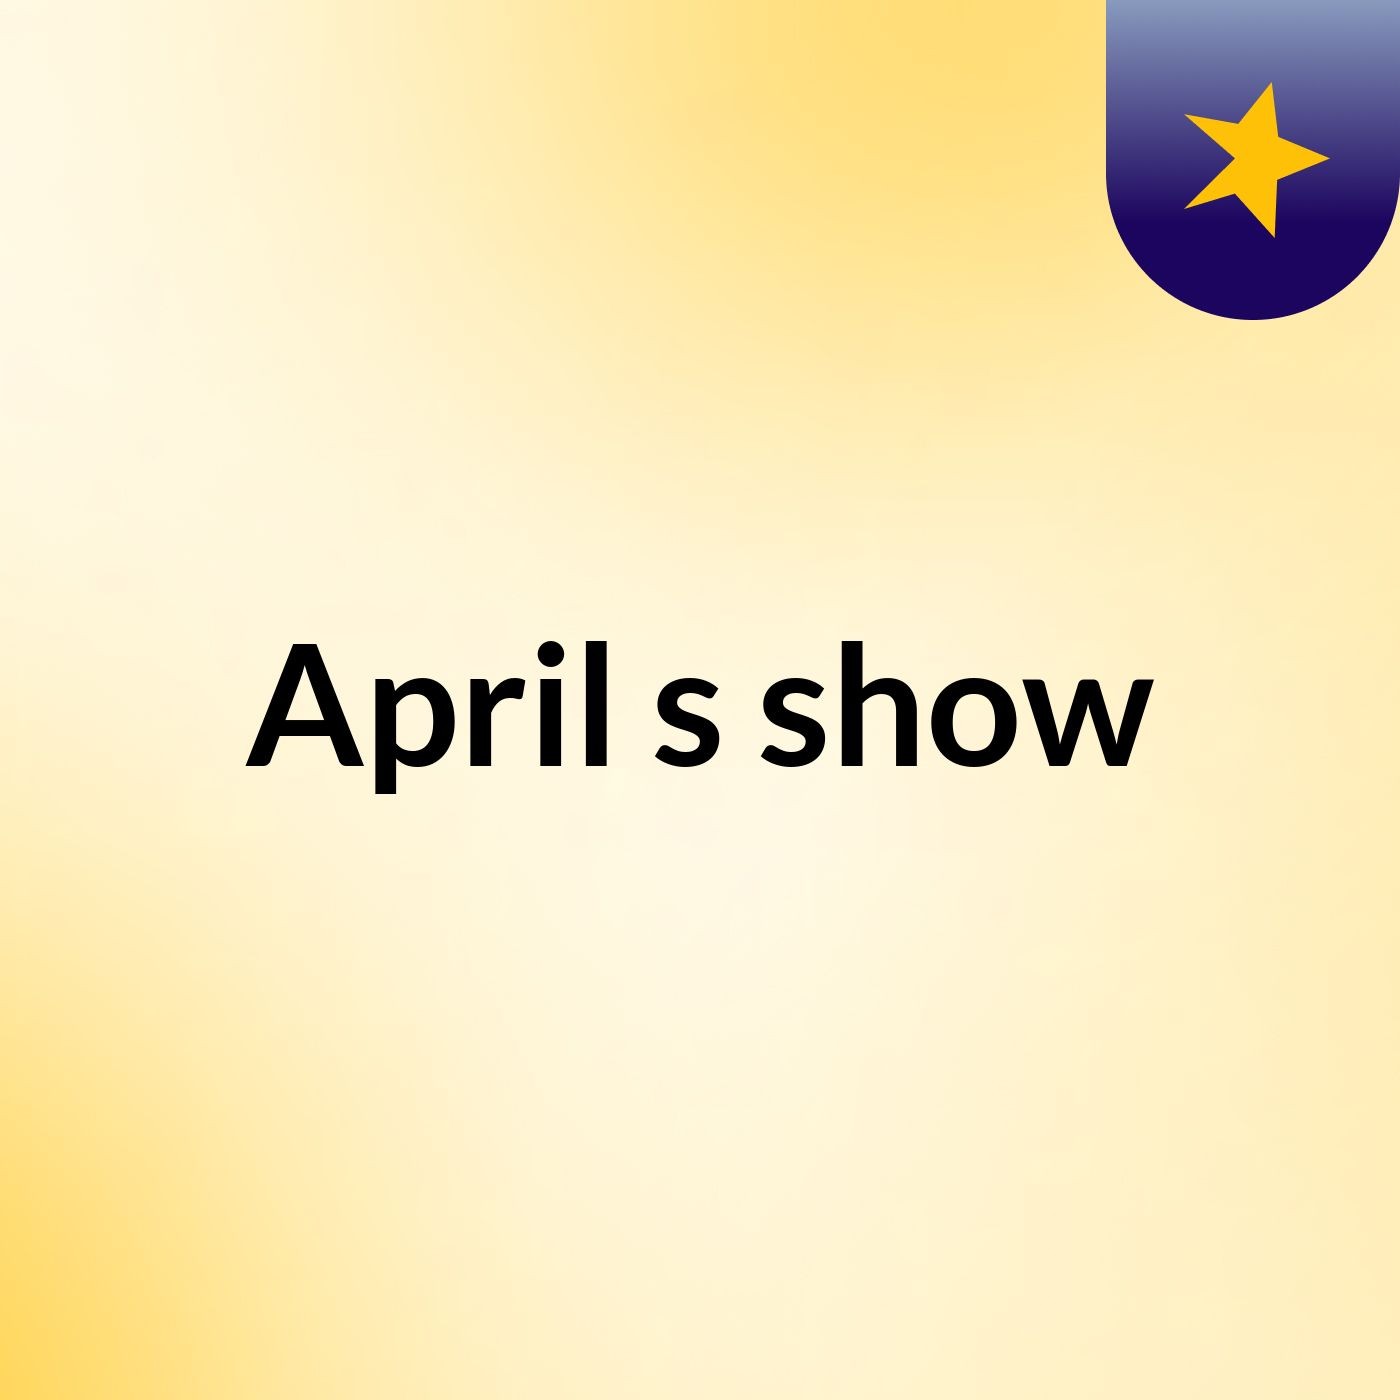 April's show